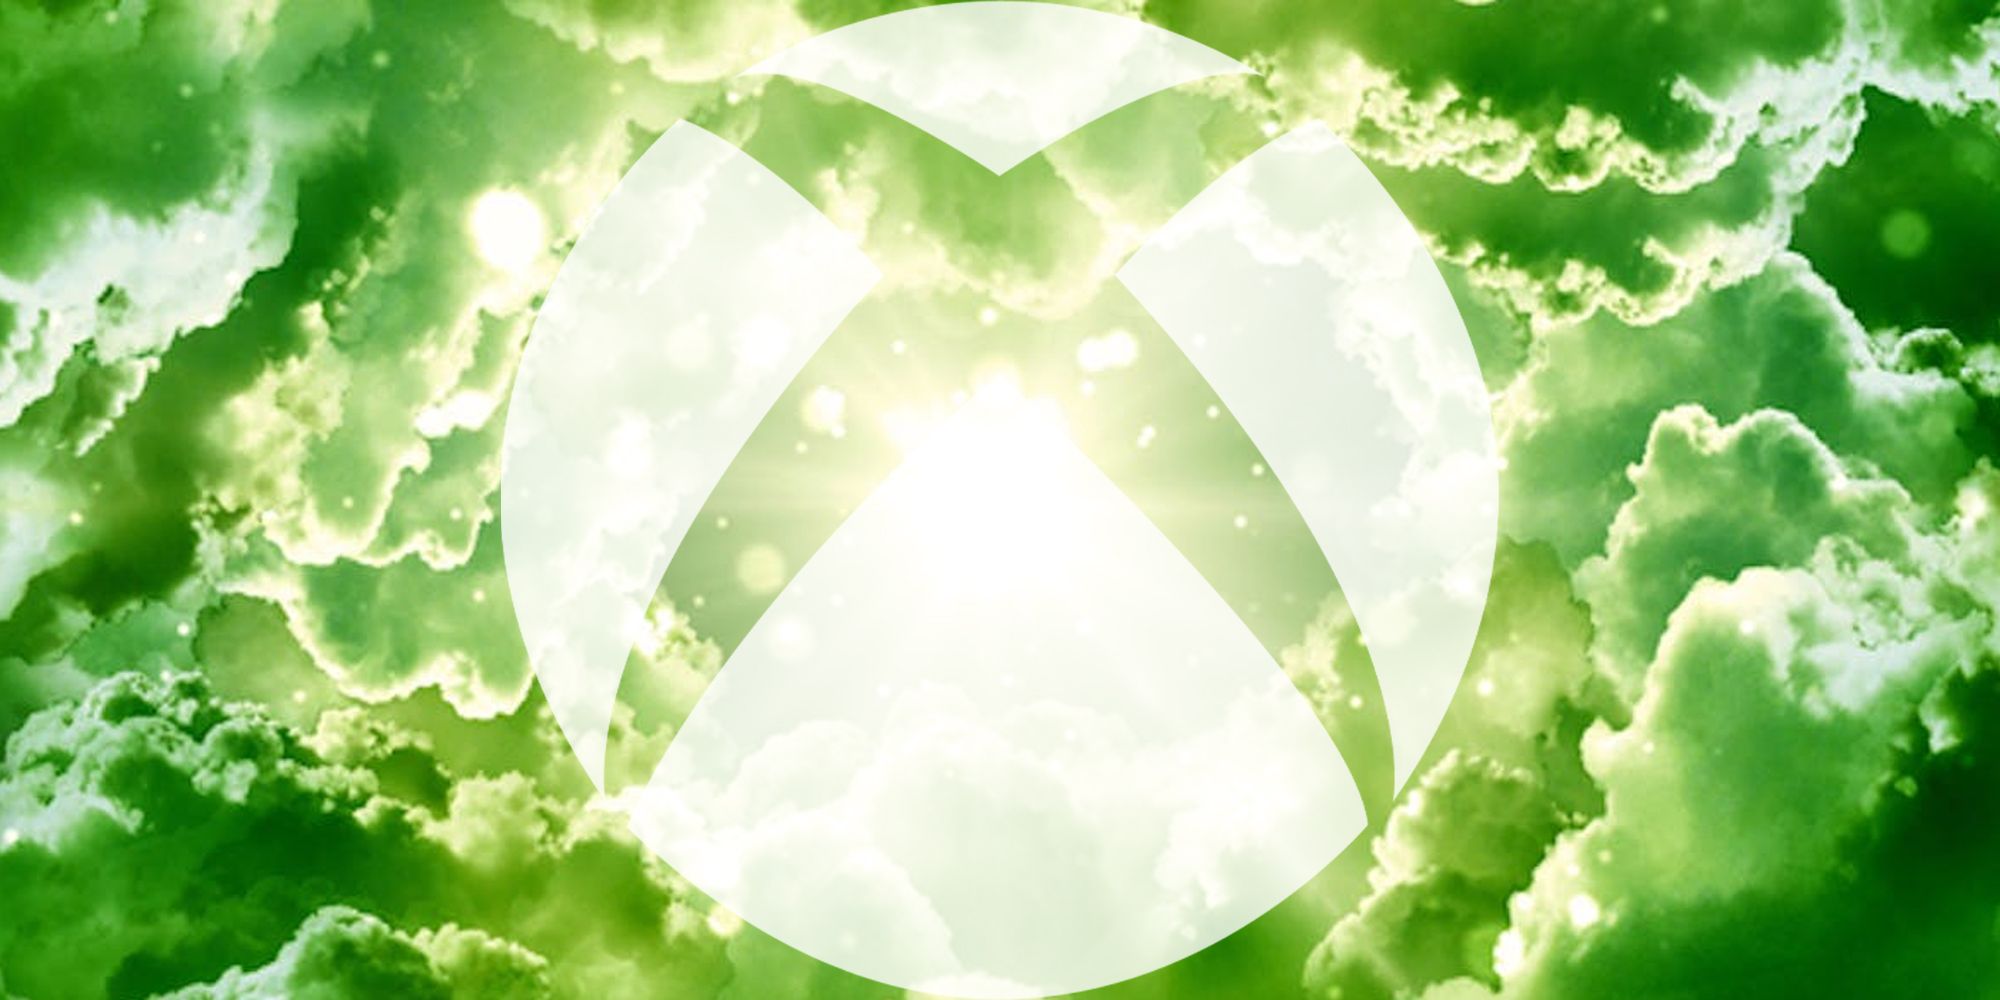 La última característica nueva de Xbox hace que Game Pass Ultimate sea una oferta aún mejor